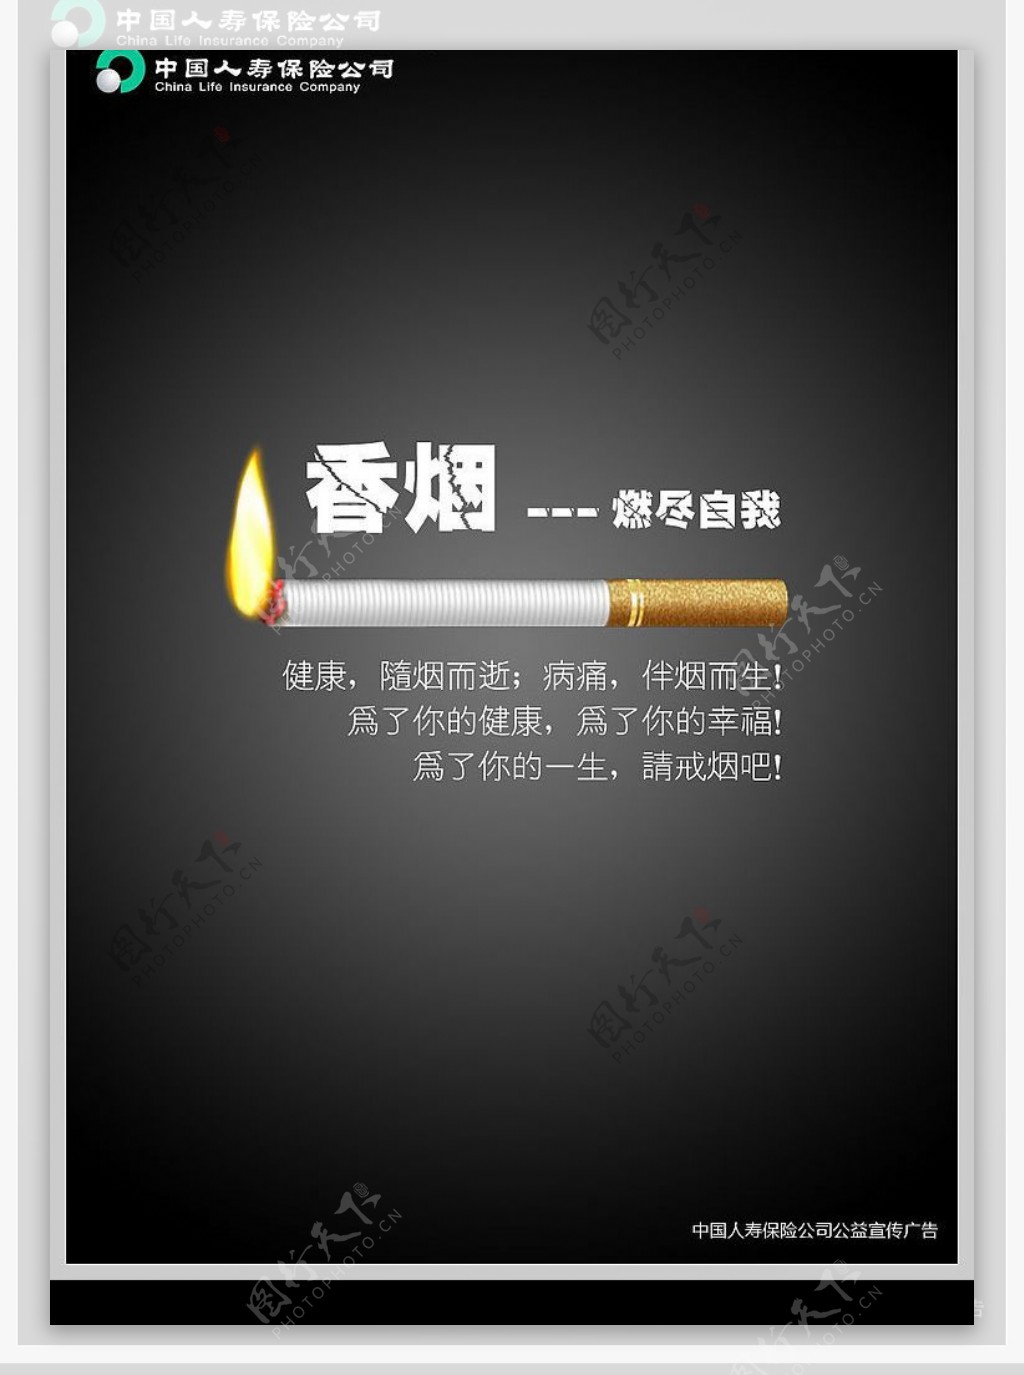 中国人寿保险公司禁烟公益宣传广告图片